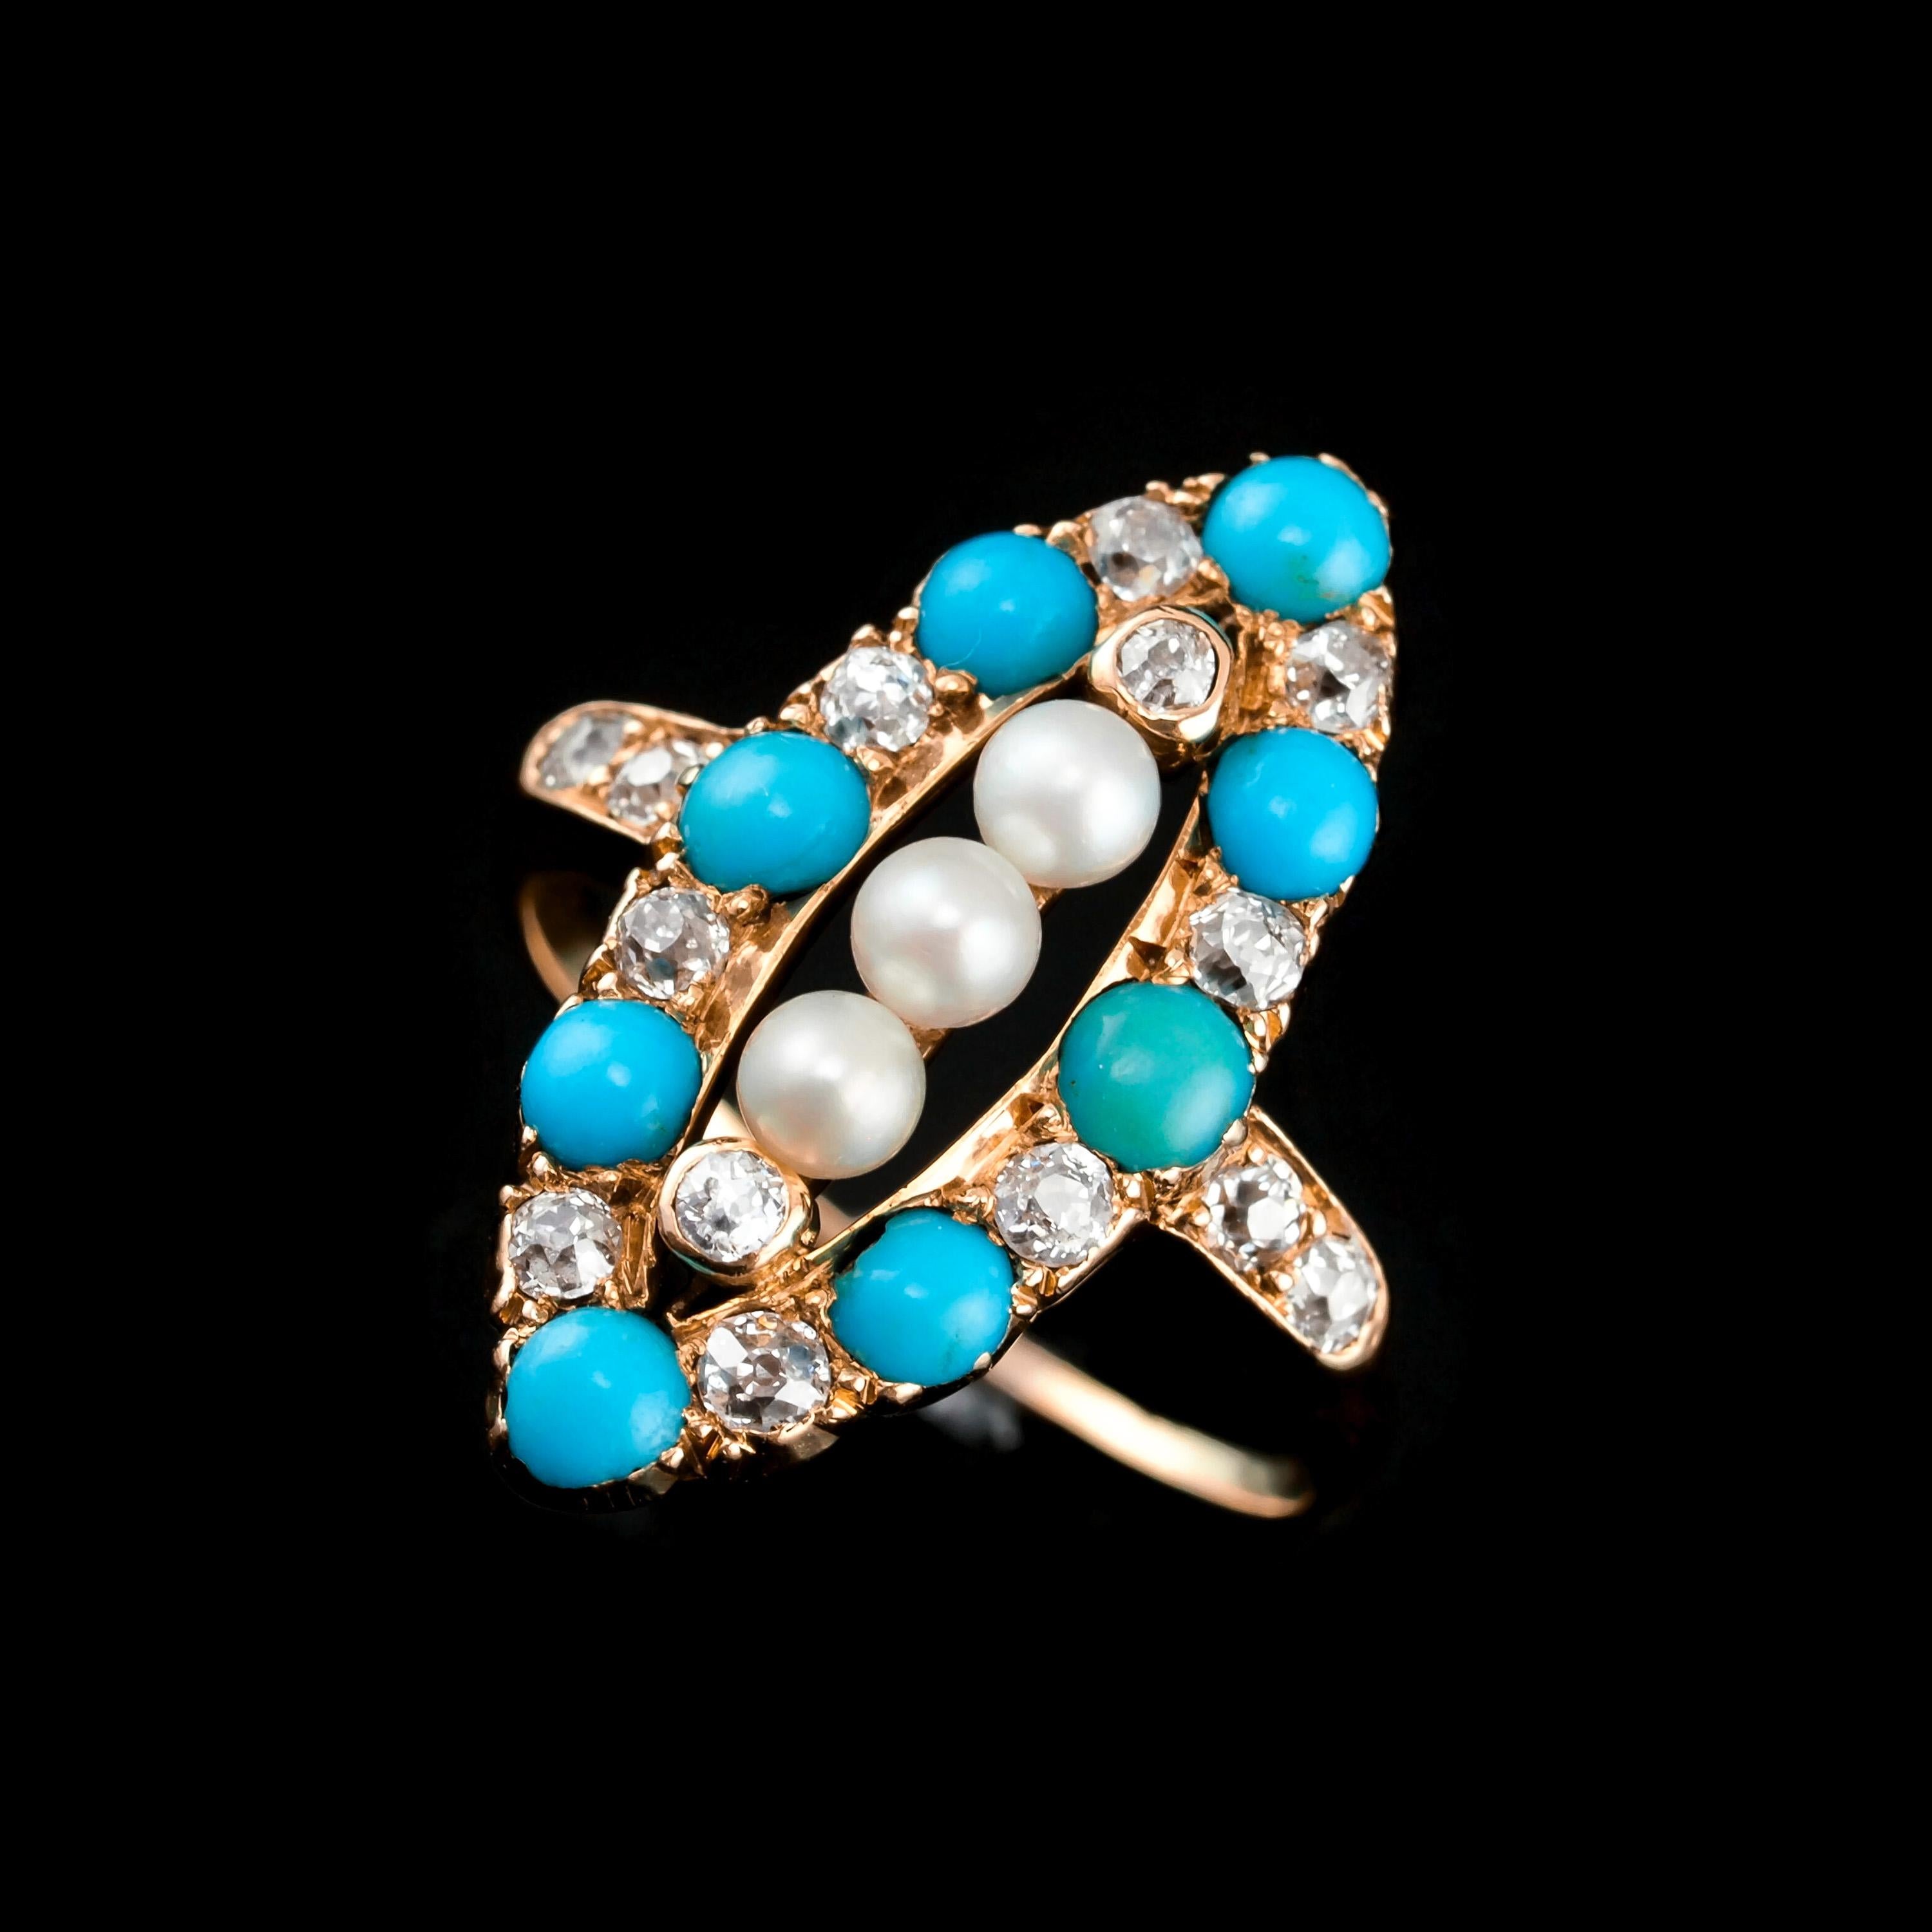 Wir freuen uns, diesen prächtigen antiken viktorianischen Ring aus 18 Karat Gold mit Türkisen, Perlen und Diamanten aus dem Jahr 1880 anbieten zu können. 
 
Der Ring besticht durch sein reizvolles Design mit einer auffälligen Farbkombination aus